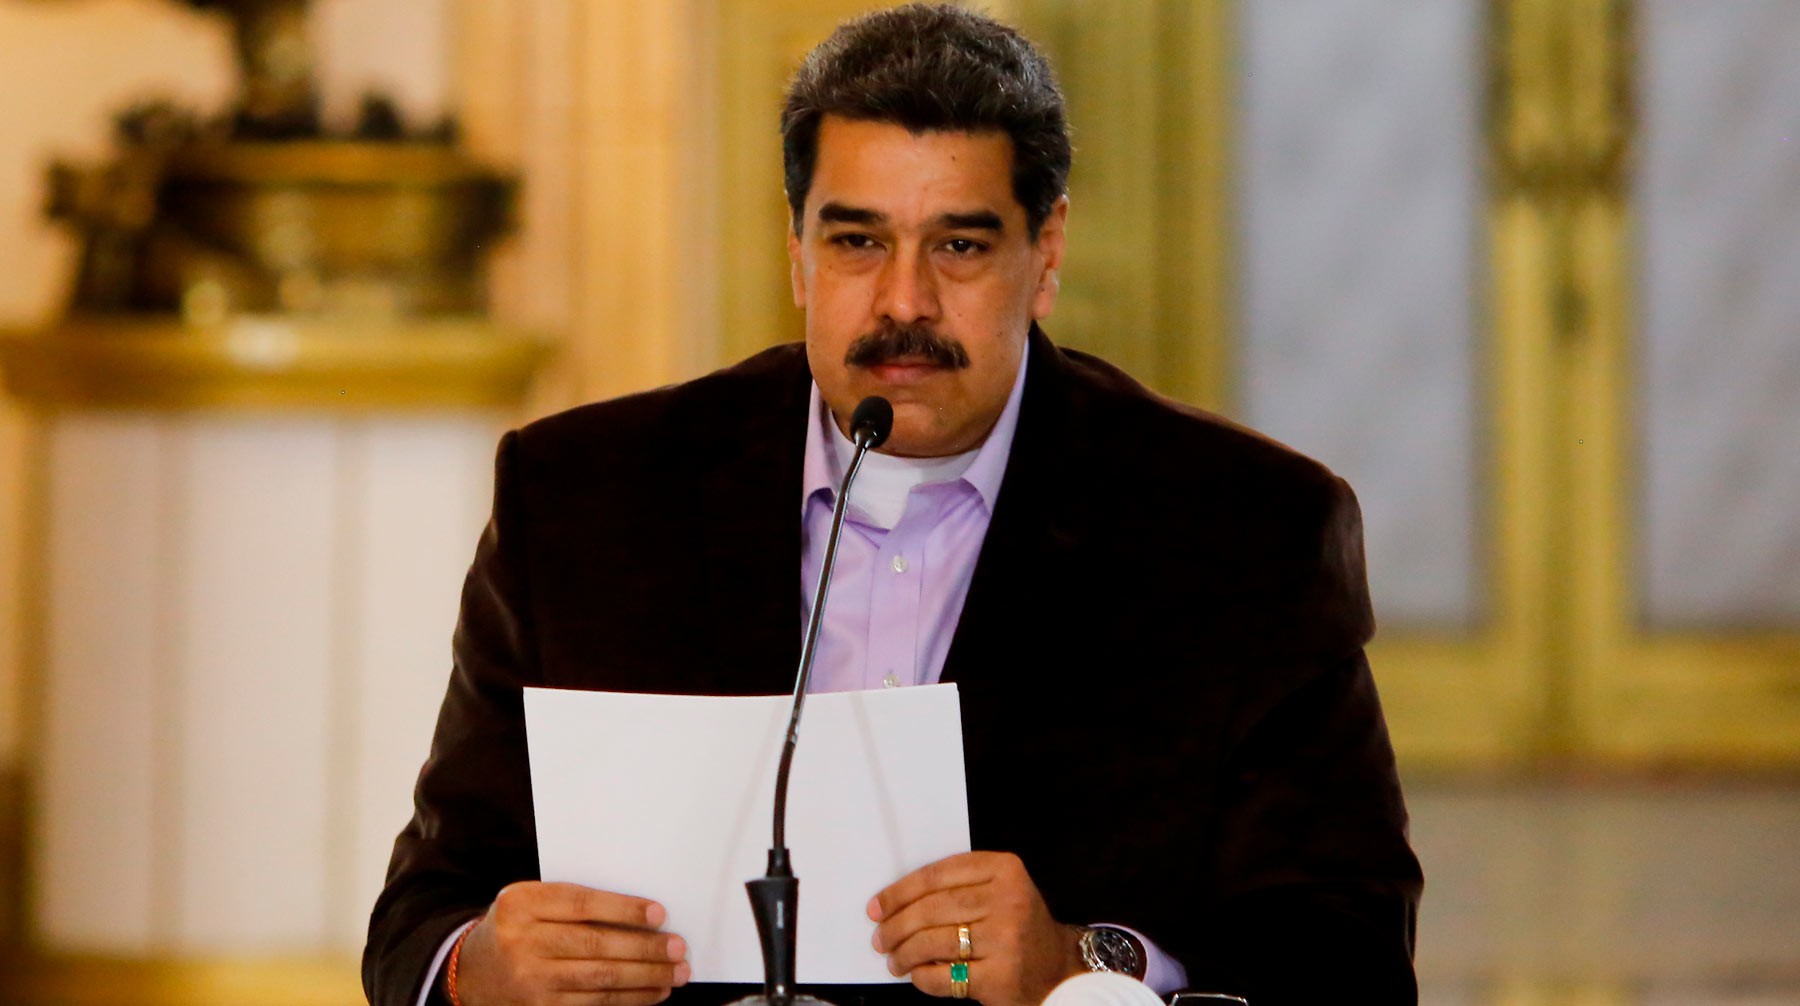 Dailystorm - WP: Венесуэльская оппозиция пыталась заказать у ЧВК свержение Мадуро